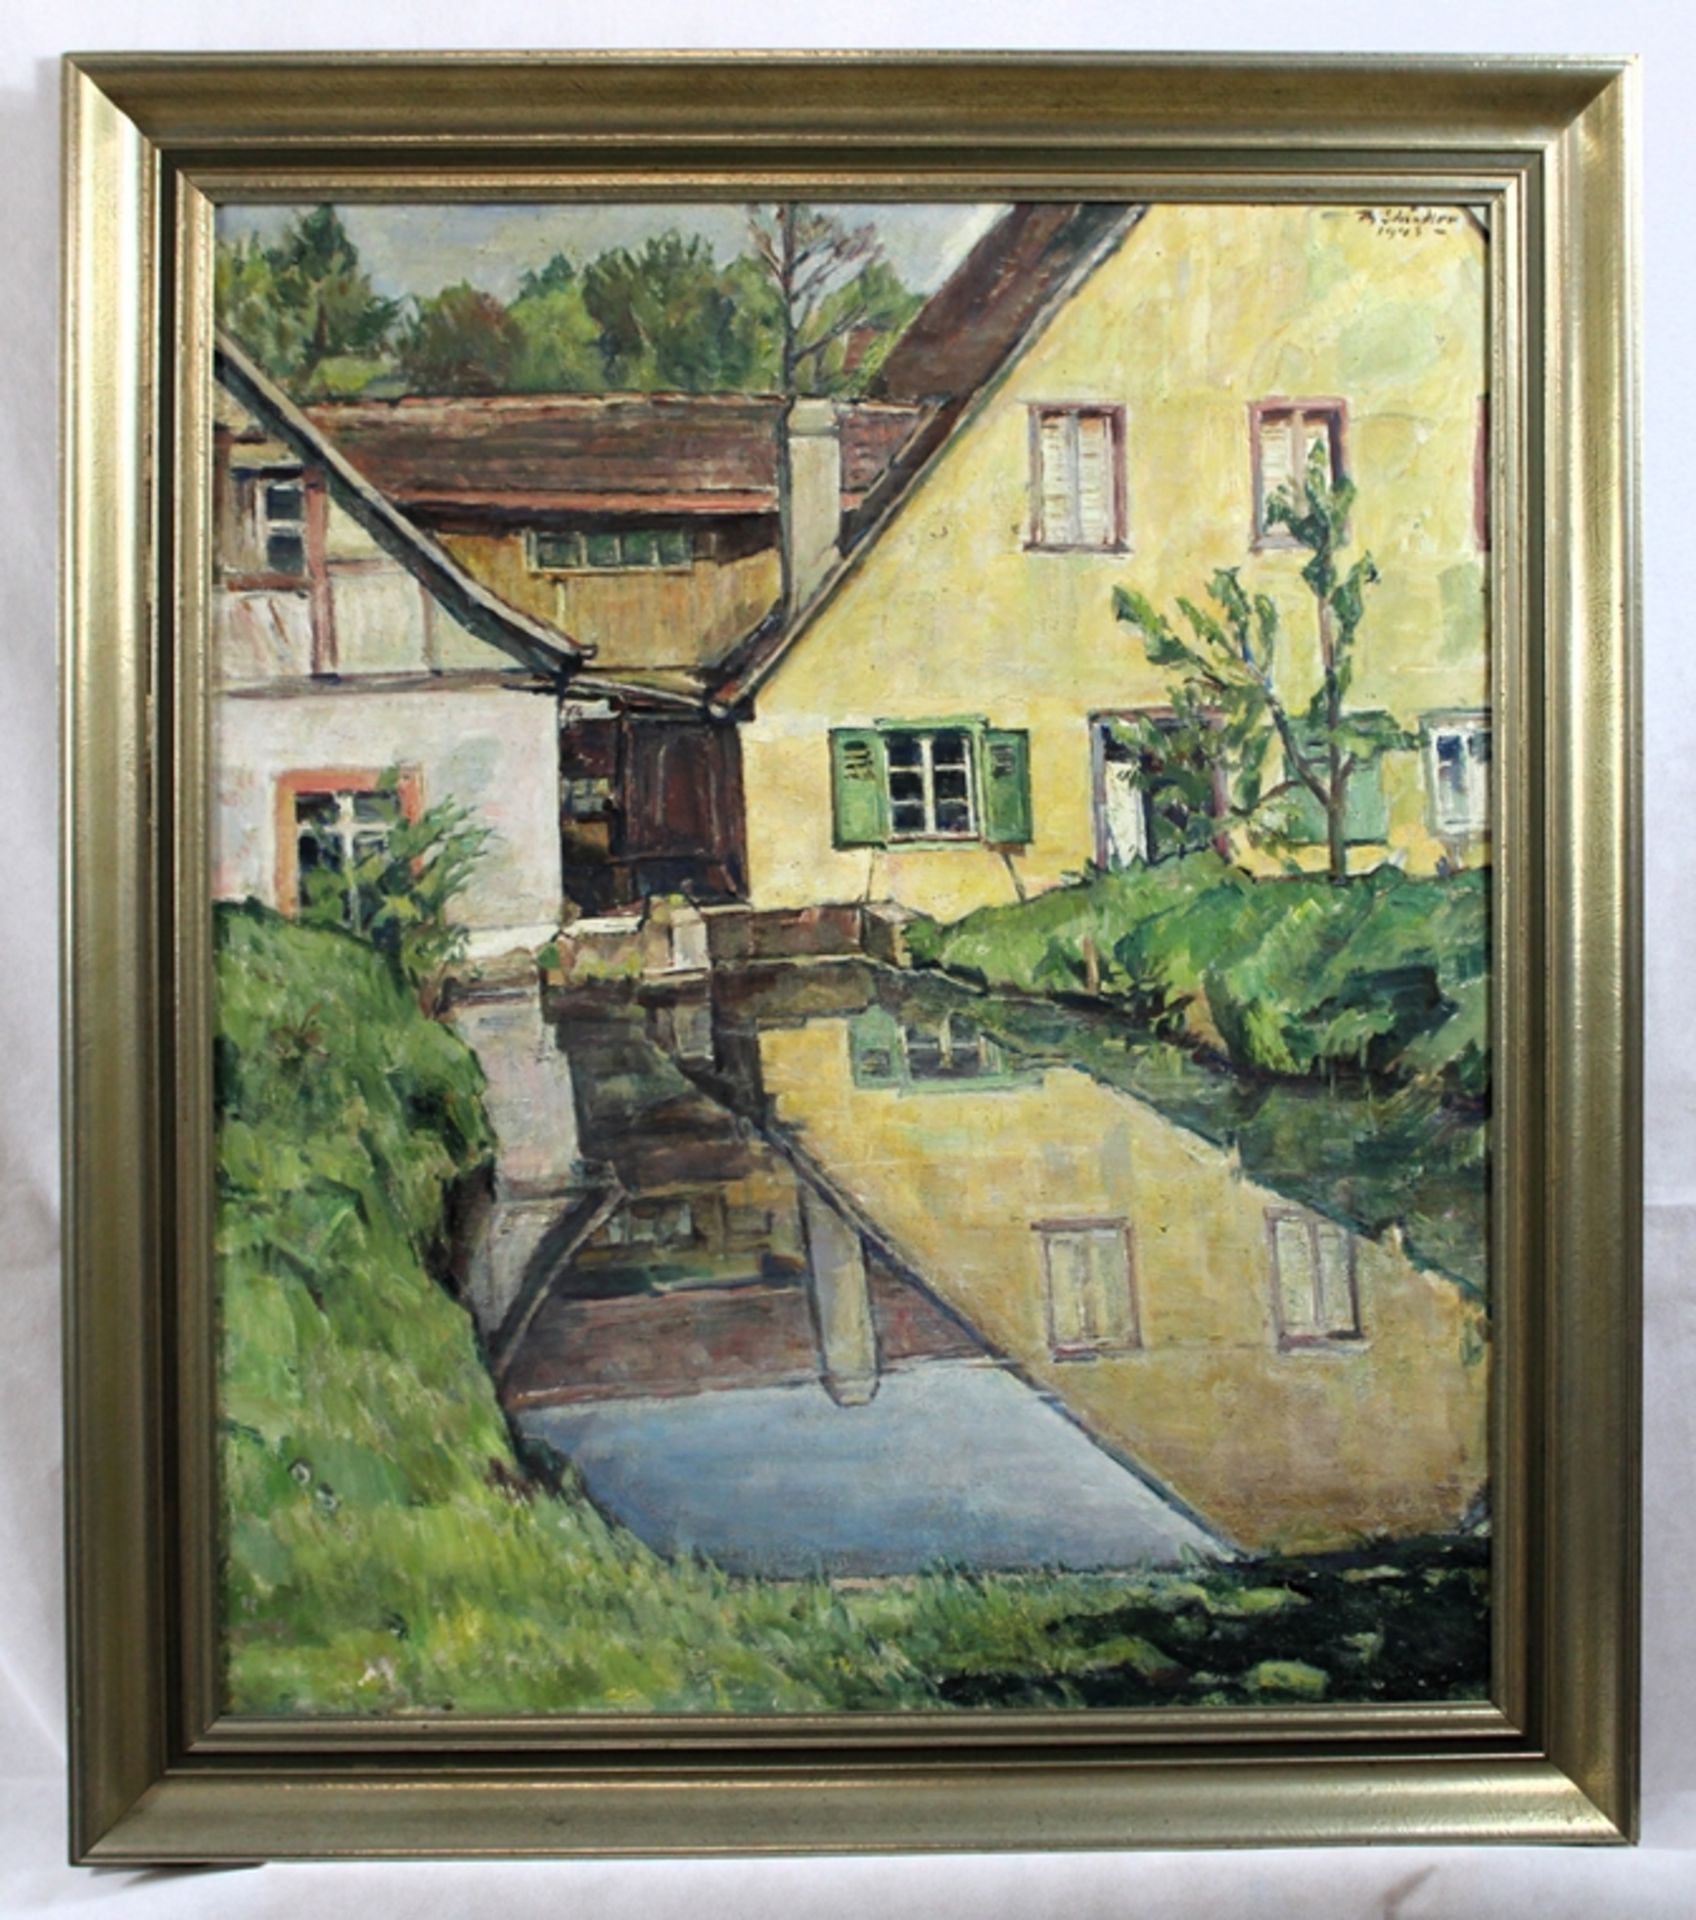 Theodor Schindler (1870 Malsch - 1950 Malsch) "Mühlenschleuse" 1943, Öl auf Leinwand, r. o. signier